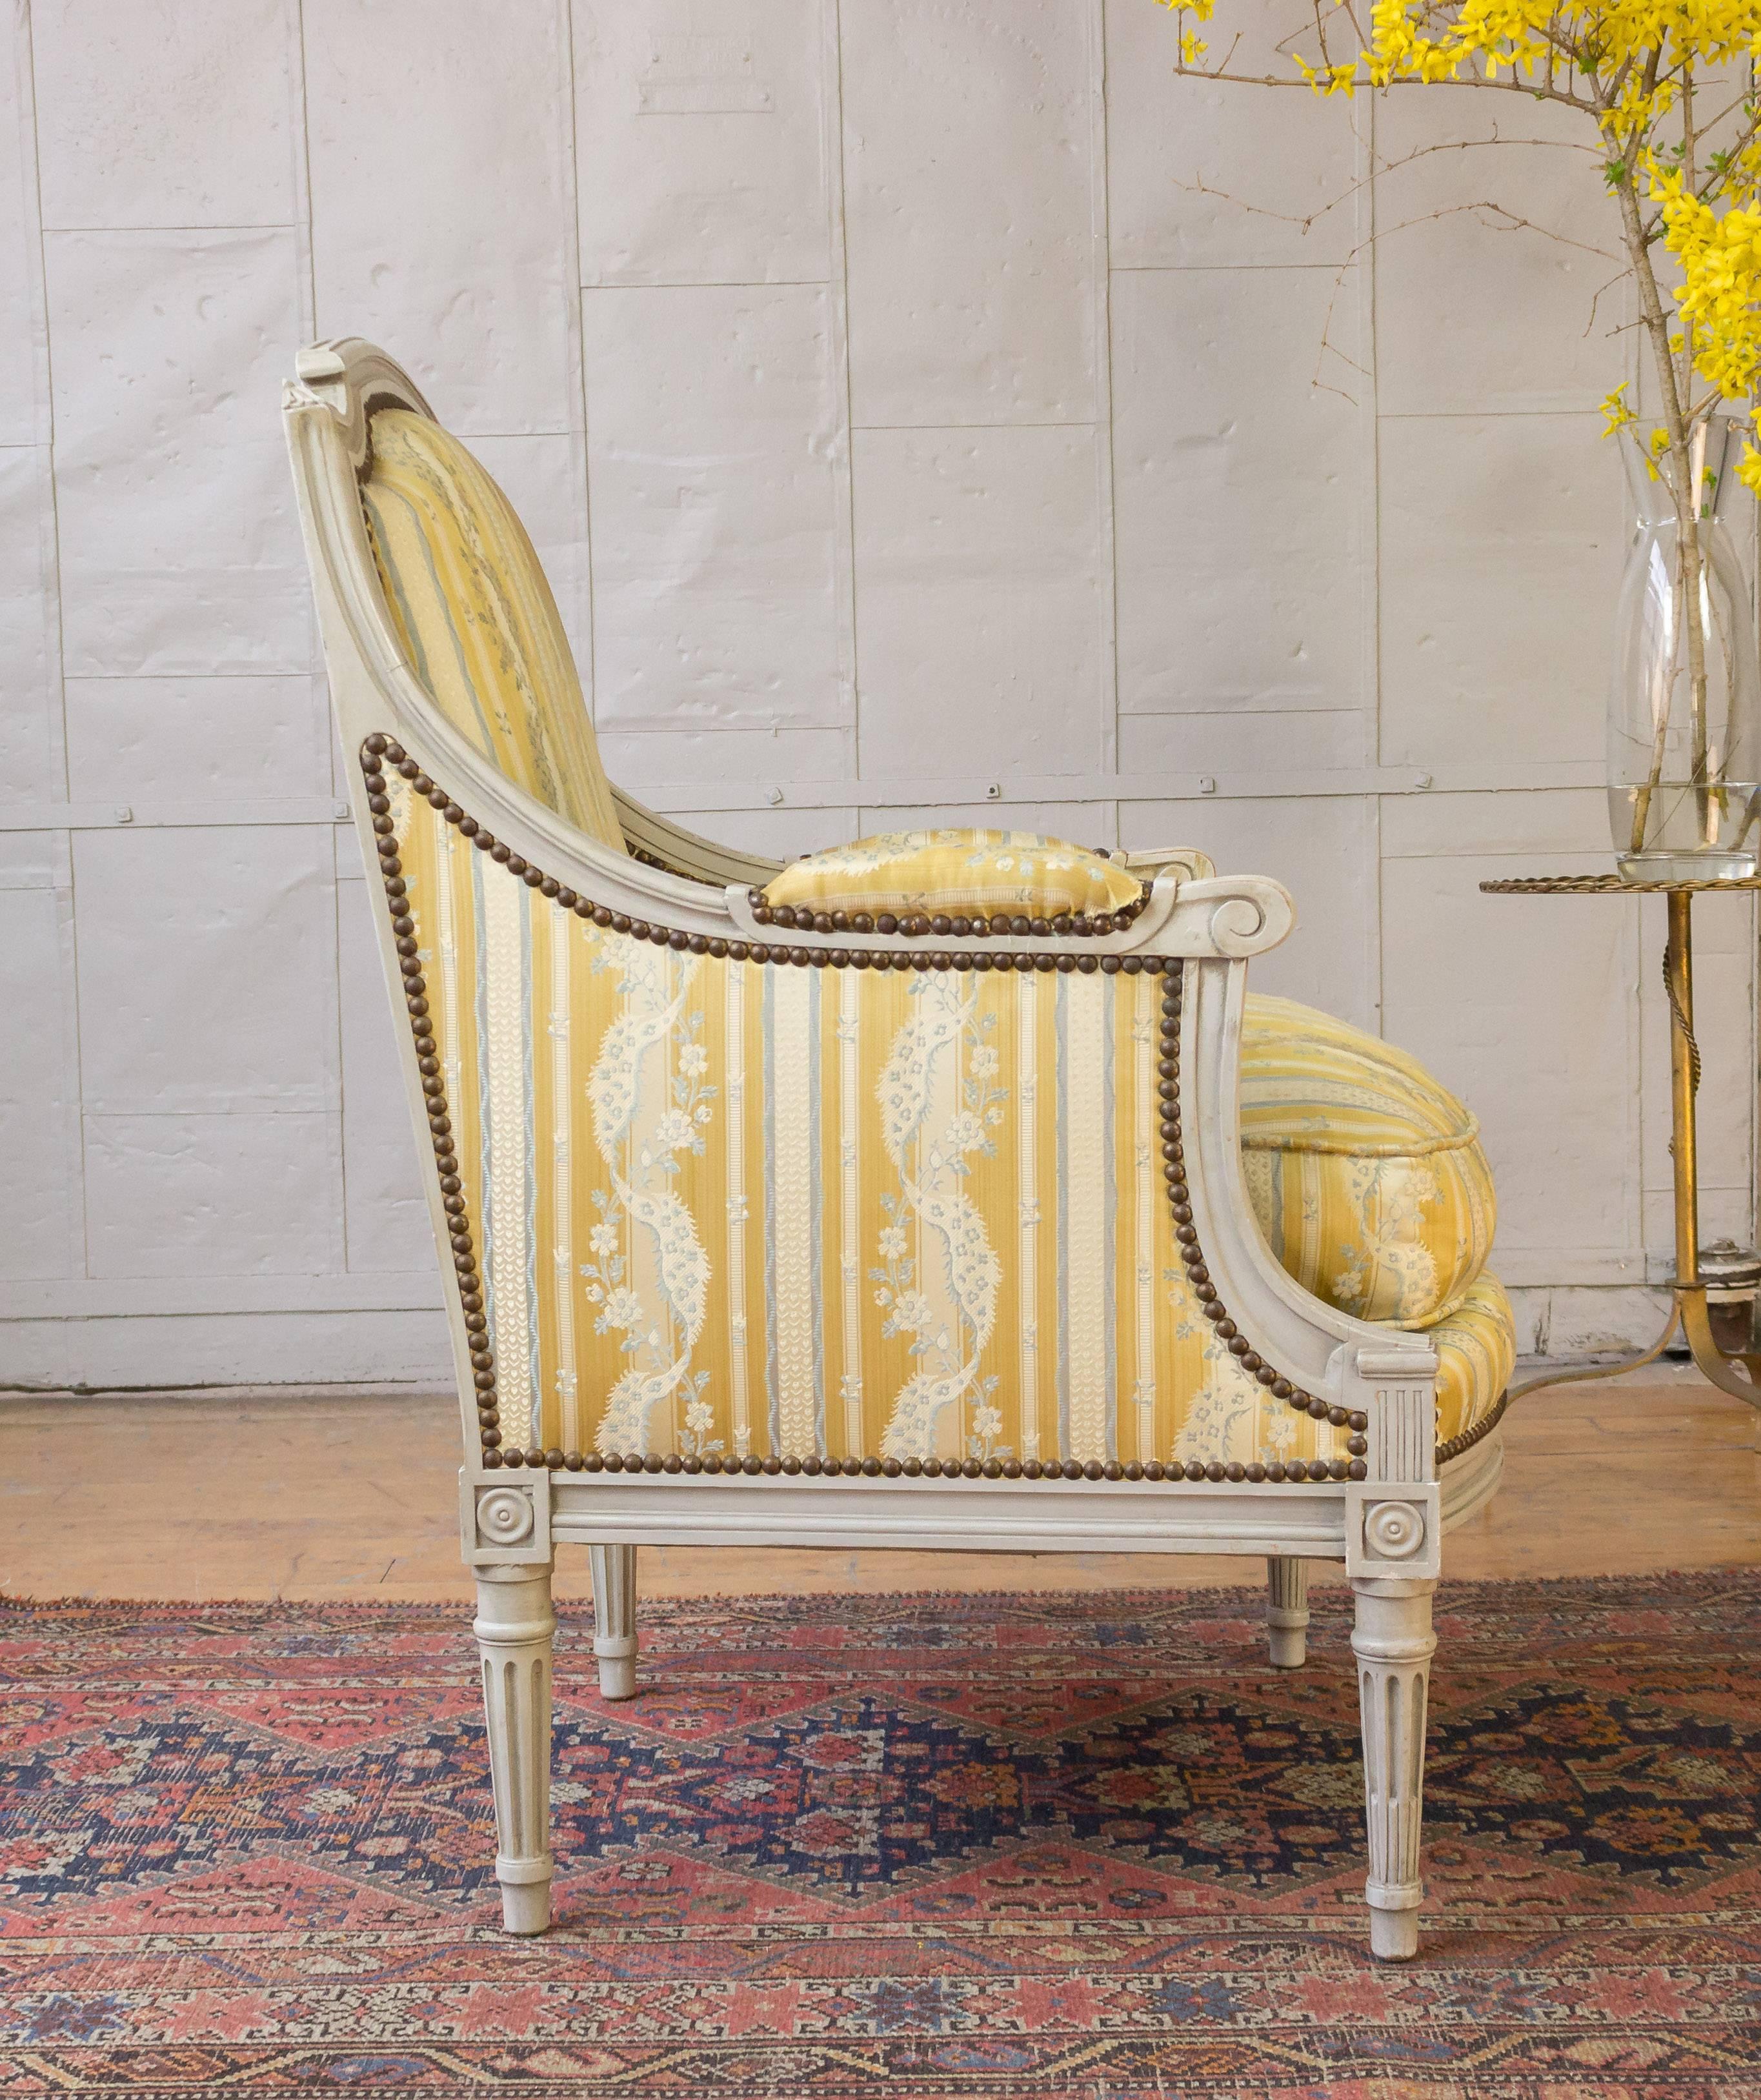 Paire de fauteuils sophistiqués de style Louis XVI. Cette paire exquise de fauteuils Louis XVI français sera un ajout magnifique à toute maison. Dotées de gracieuses armatures en bois patiné gris et sculpté, ces chaises présentent un design